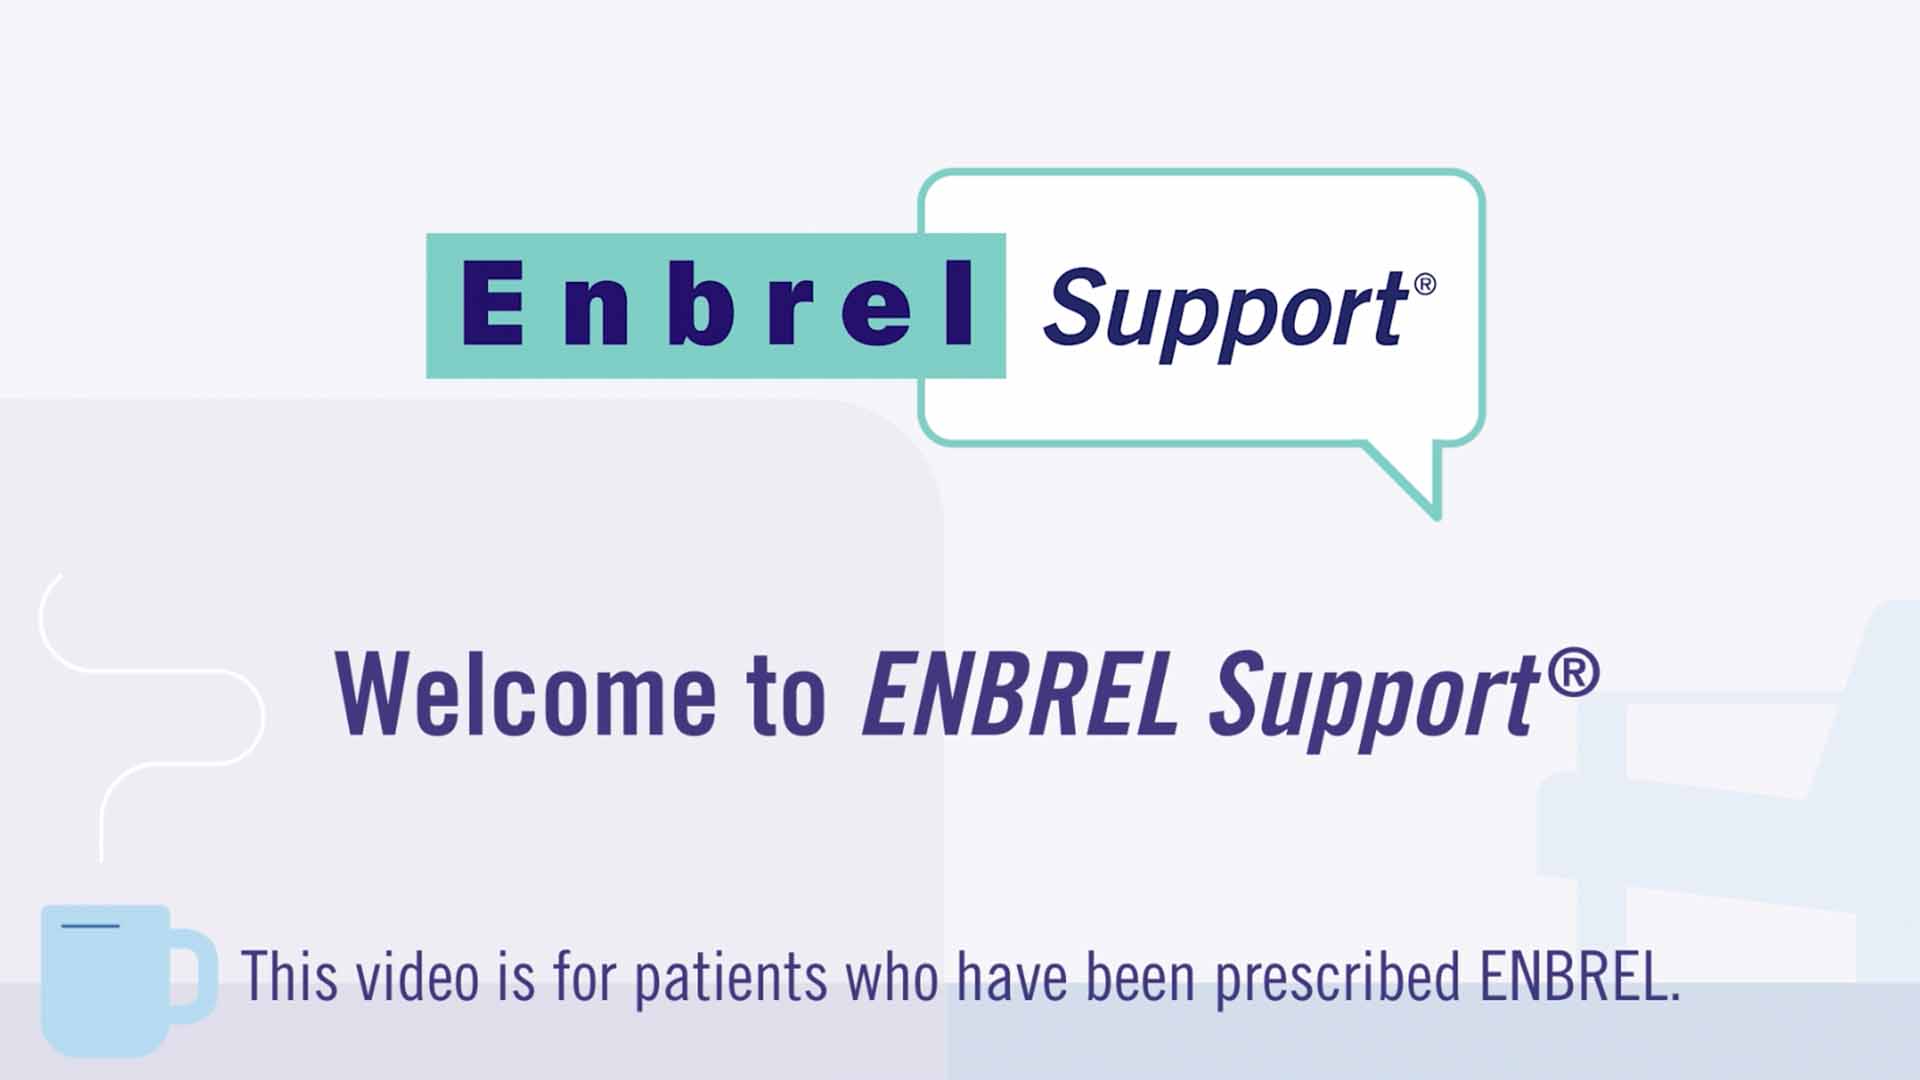 ENBREL Support®